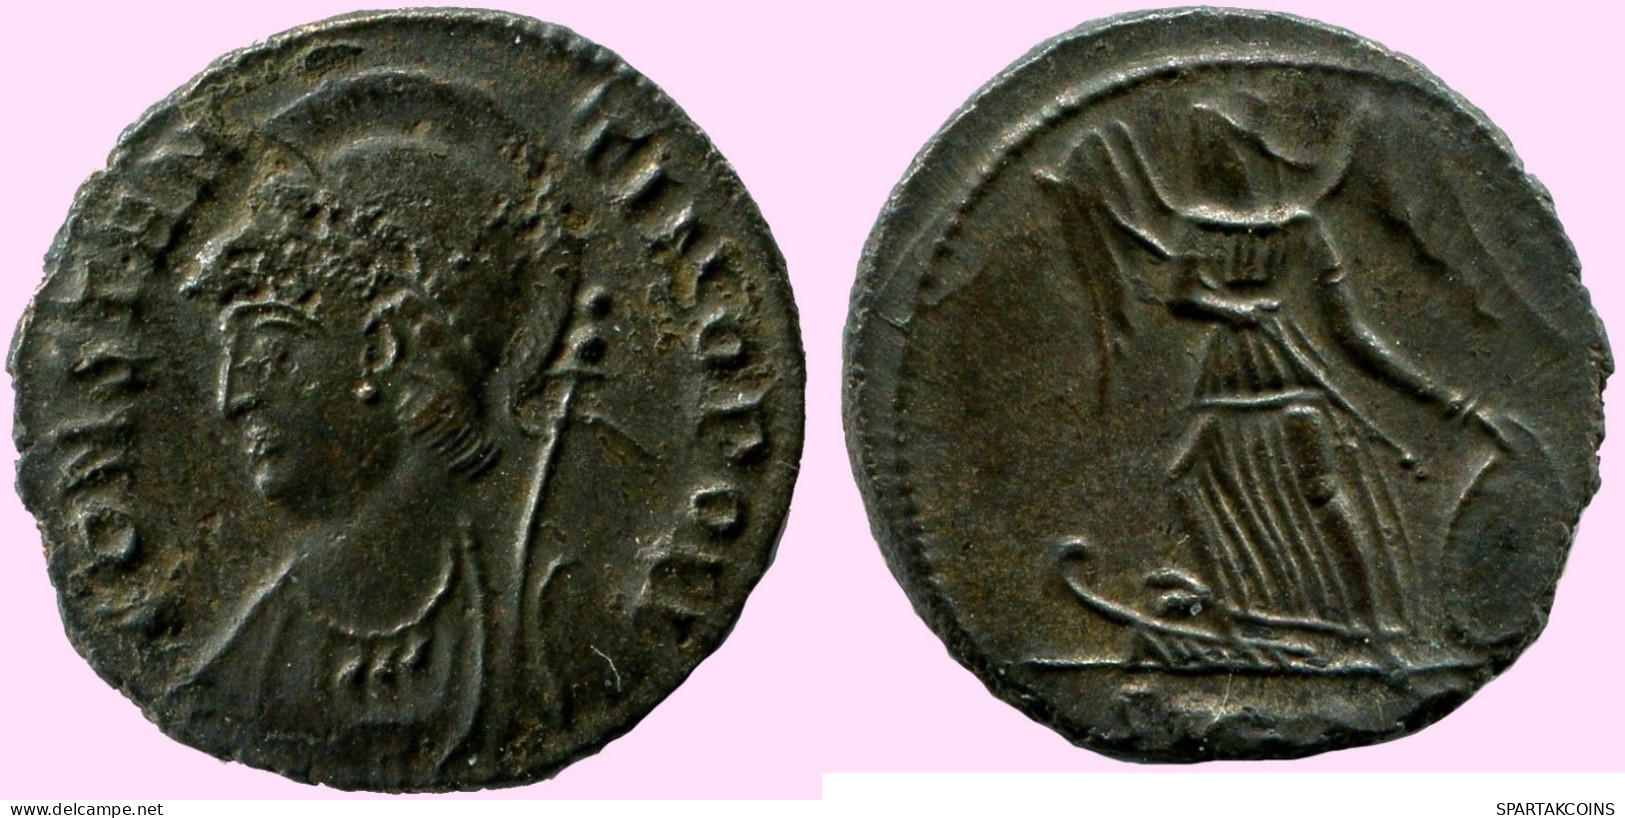 CONSTANTINUS I CONSTANTINOPOLI FOLLIS Romano ANTIGUO Moneda #ANC12086.25.E.A - The Christian Empire (307 AD Tot 363 AD)